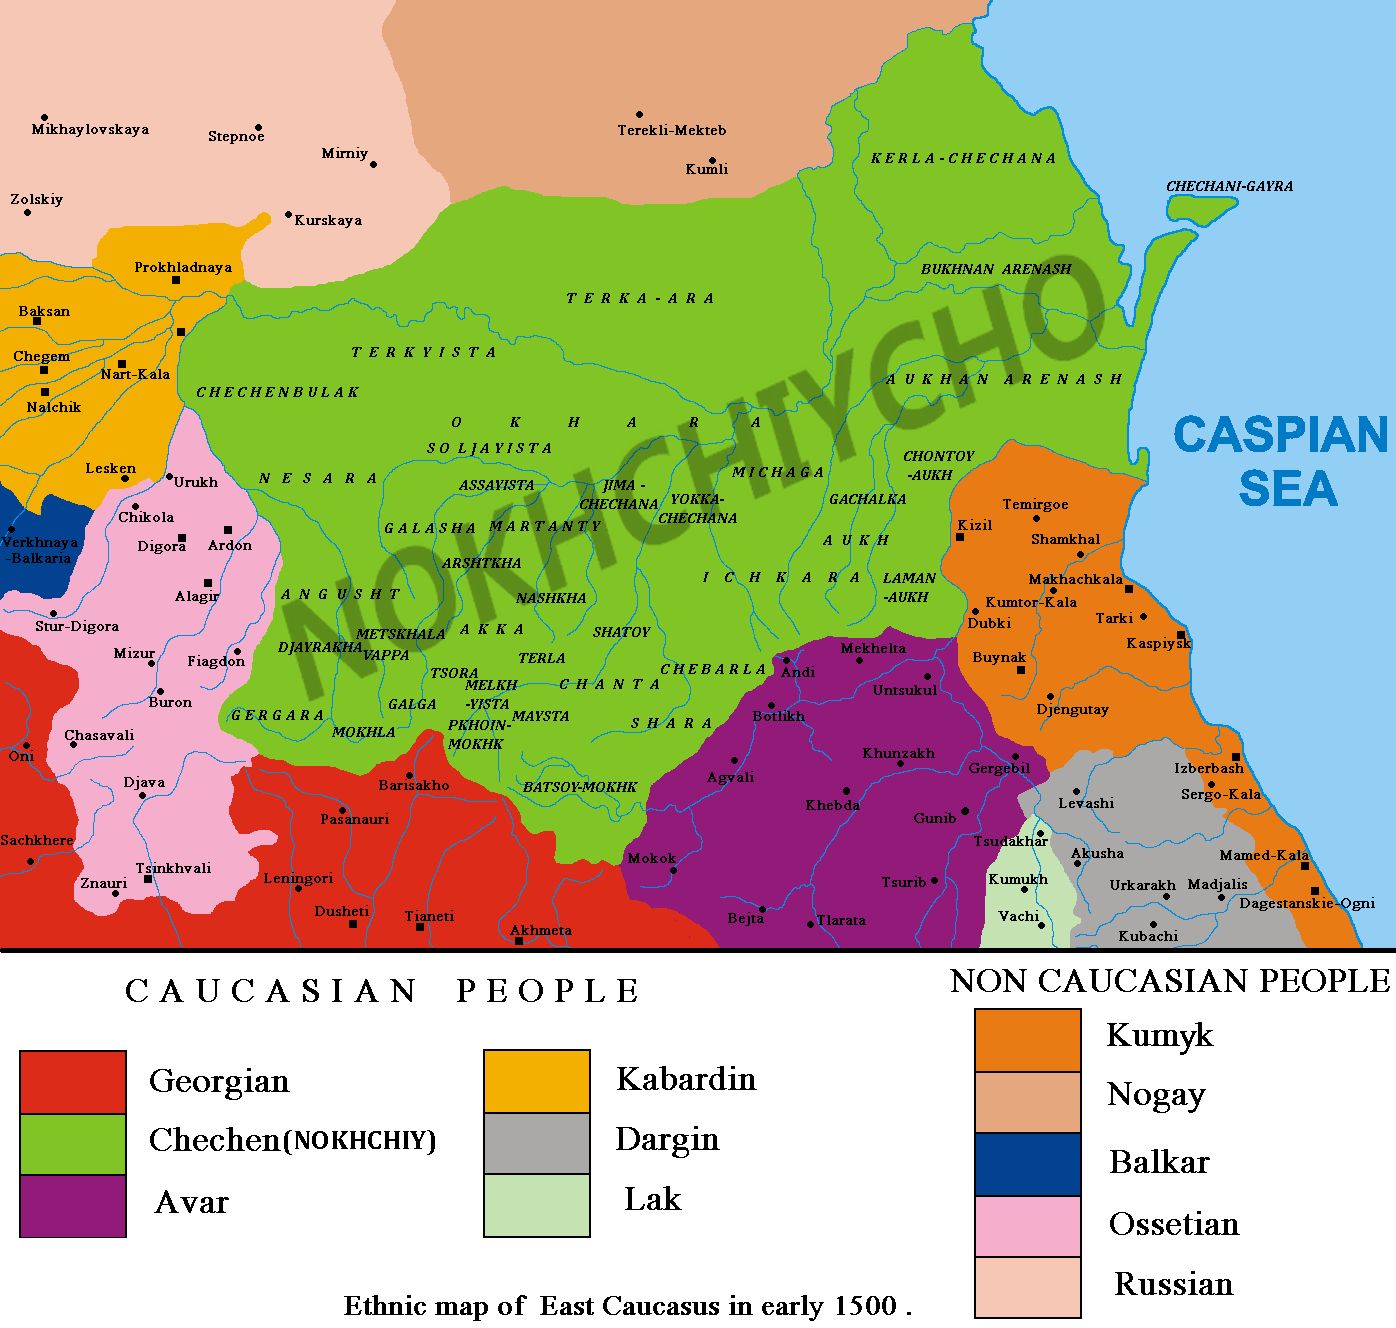 Карта северного Кавказа
Карта северного Кавказа до 15 века
Ключевые слова: старая,карта,кавказ,северный